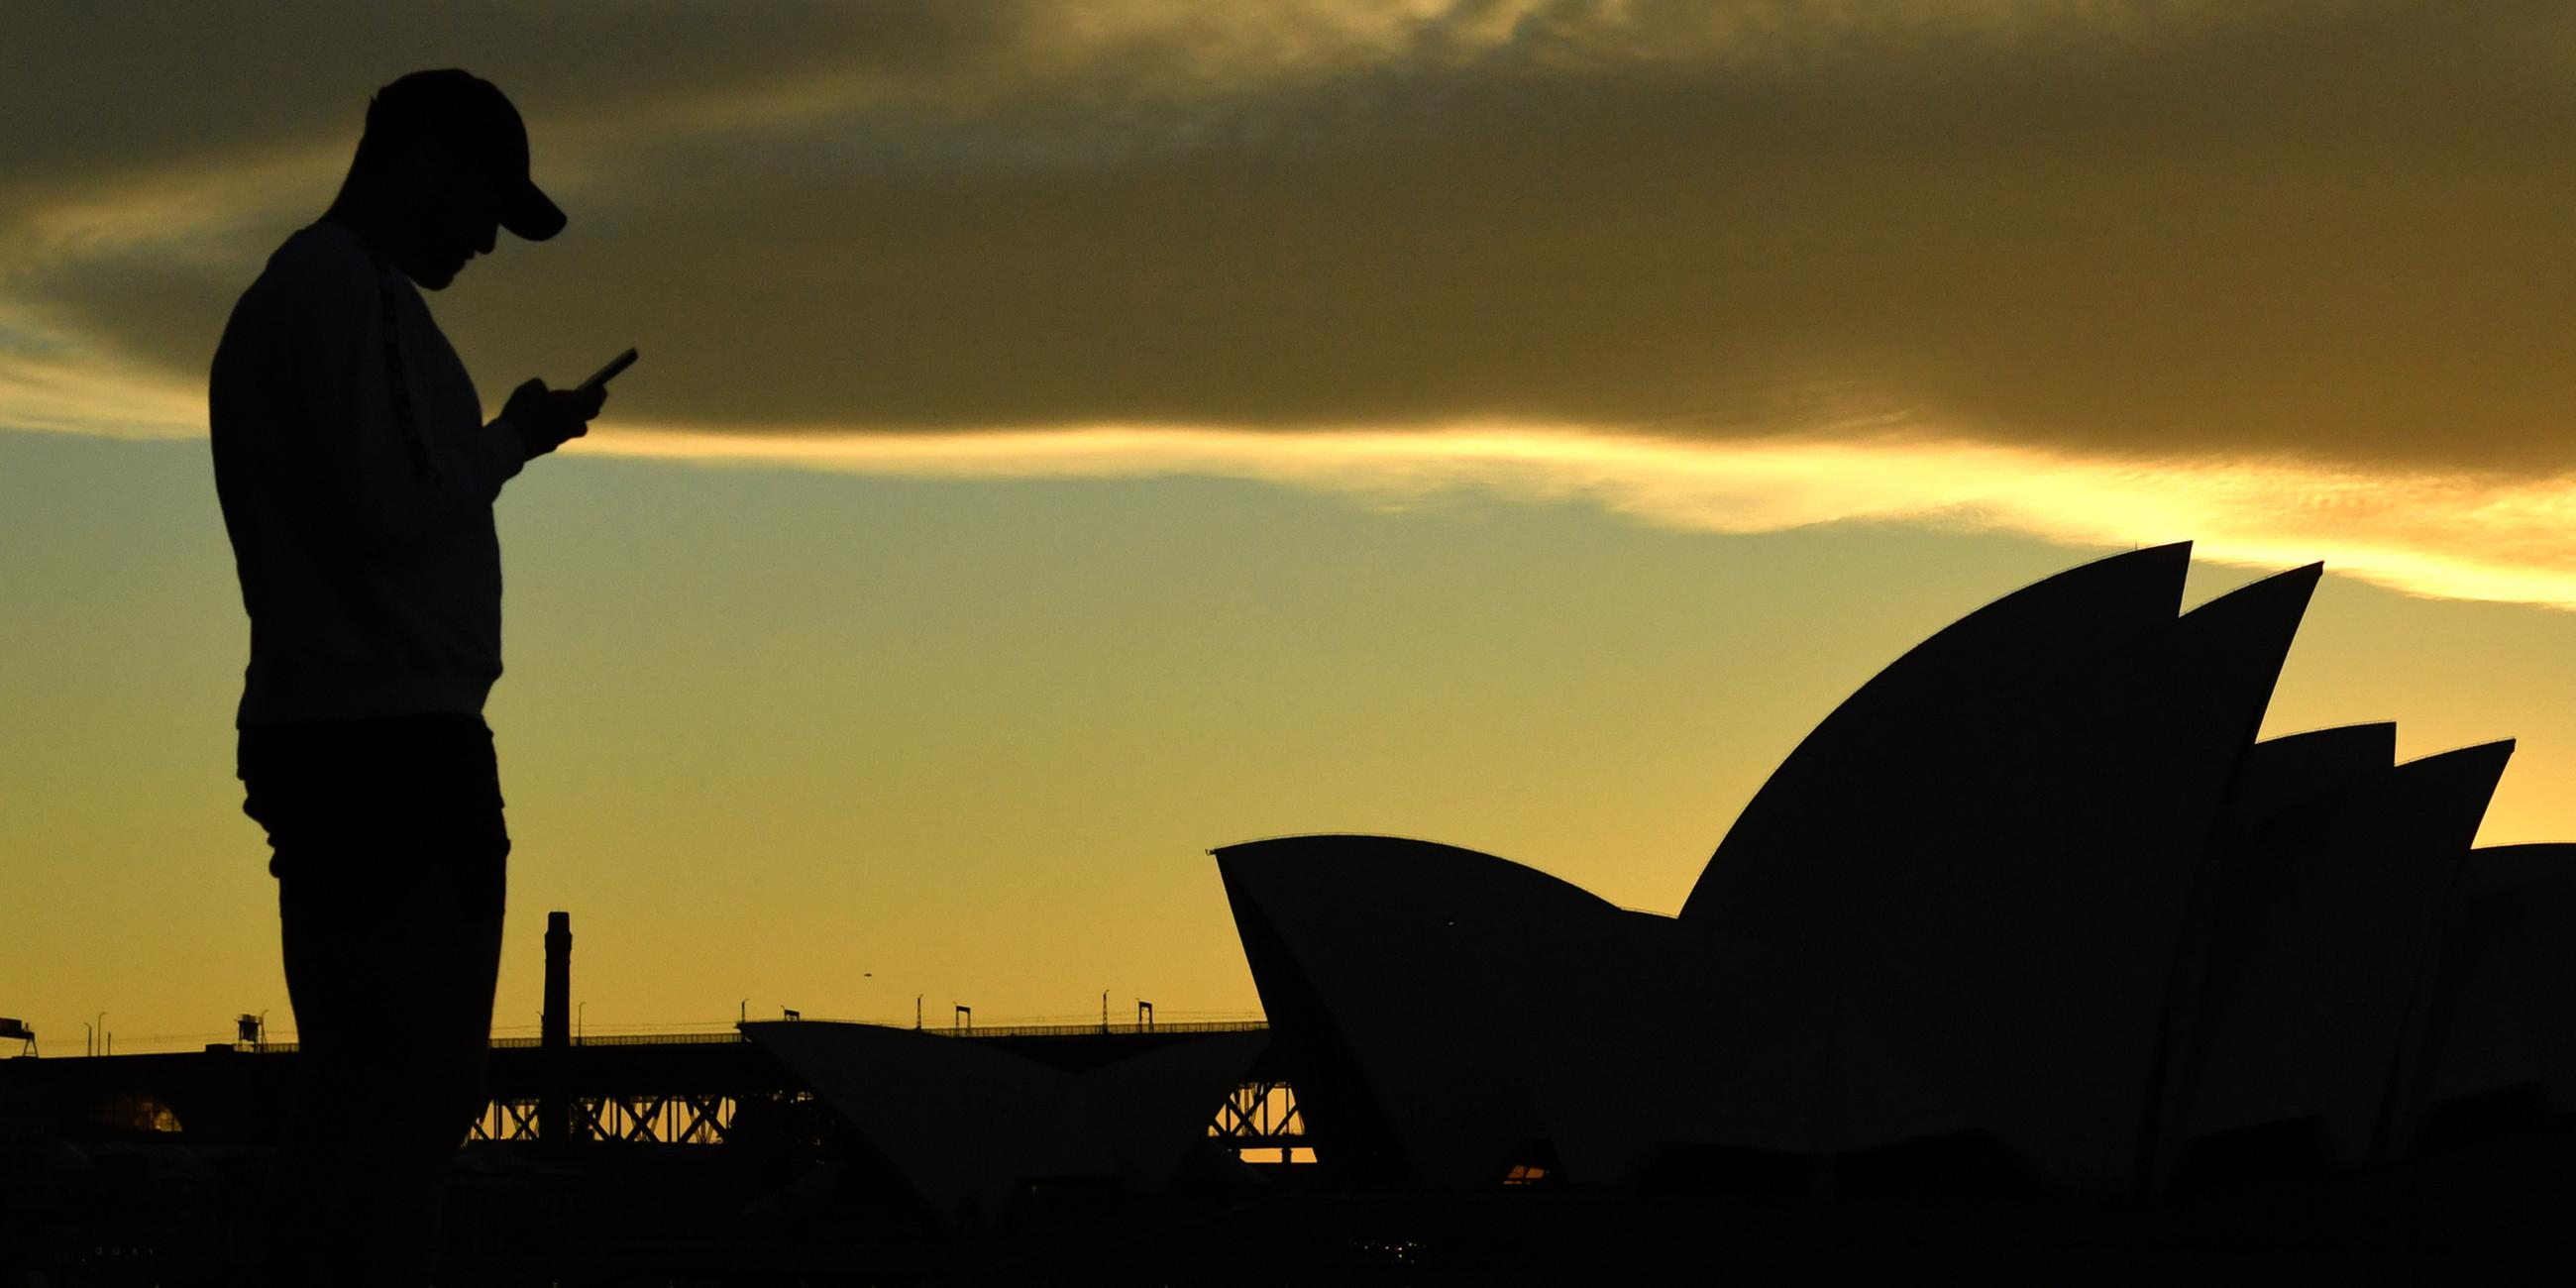 Archiv: Ein Mann steht bei Sonnenuntergang vor dem Sydney Opera House und blickt auf sein Mobiltelefon. (26.07.2021)